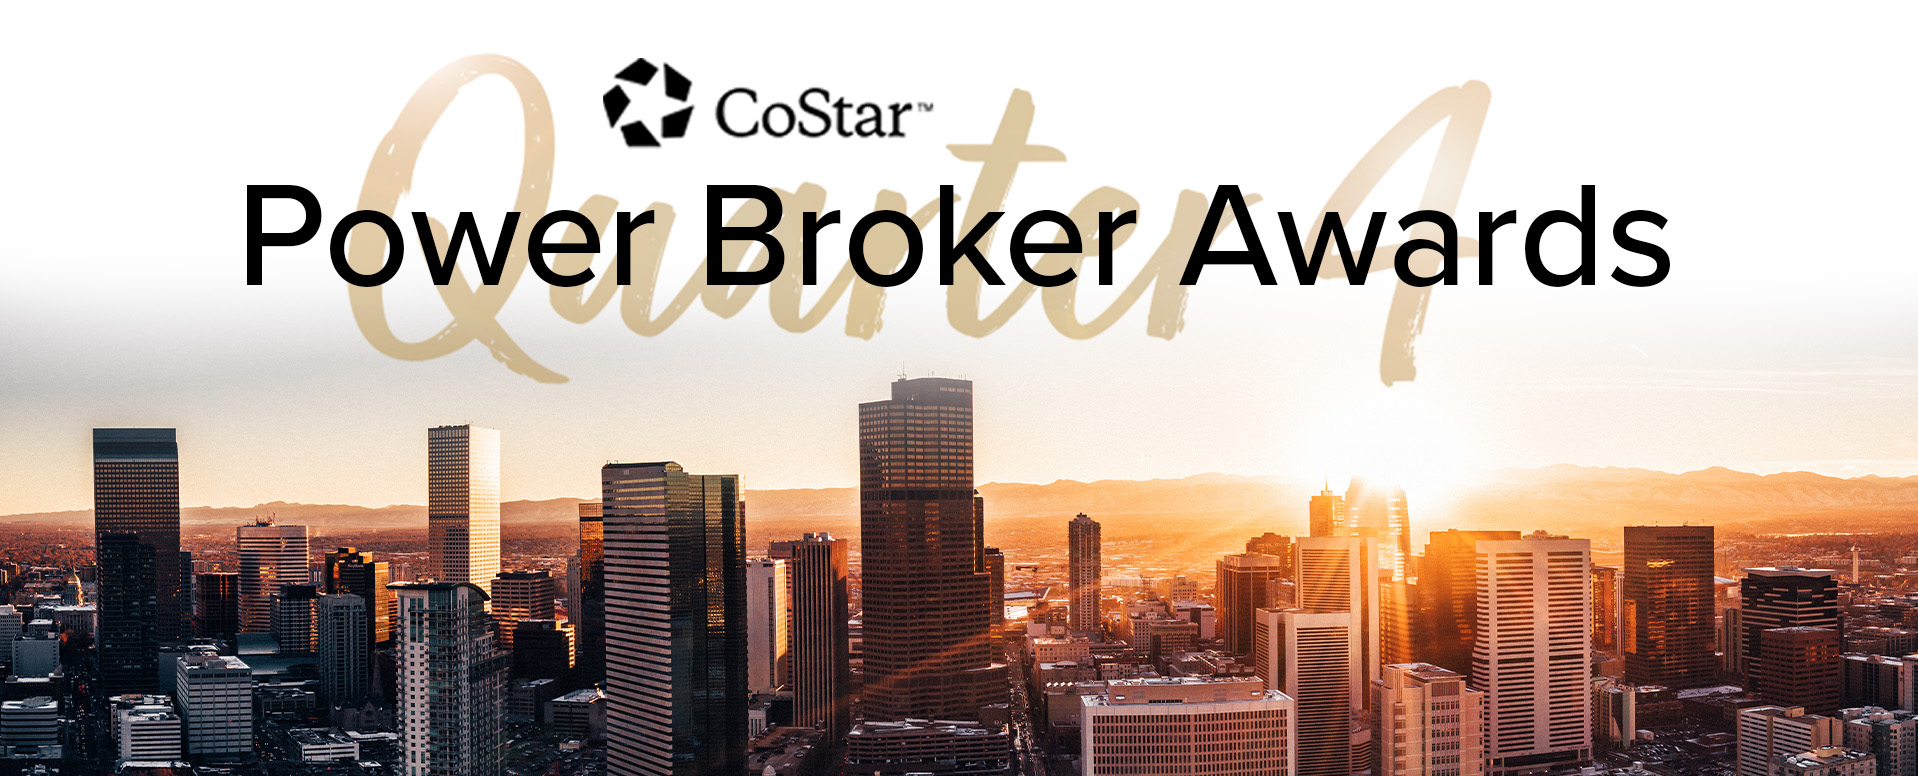 CoStar Power Broker Quarterly Deals Awards